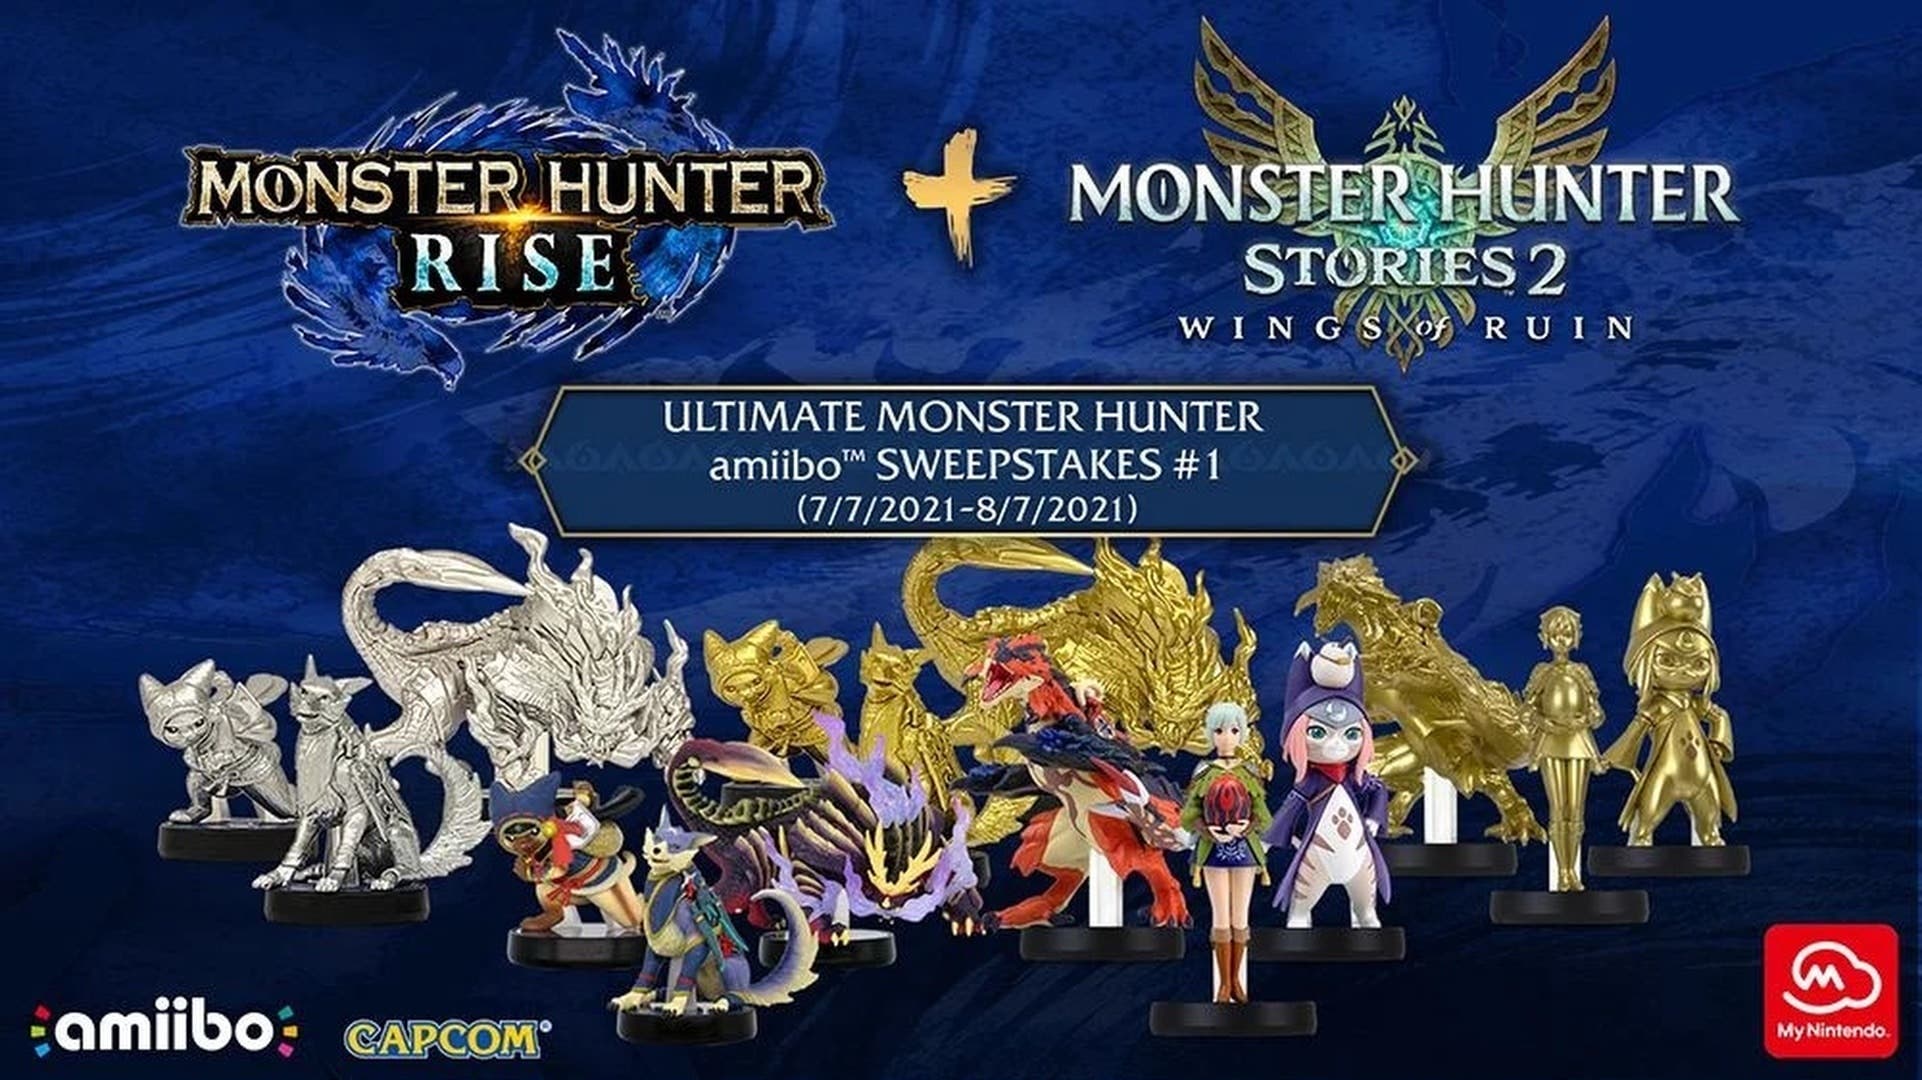 Nintendo sortea 15 amiibo de Monster Hunter para los jugadores norteamericanos